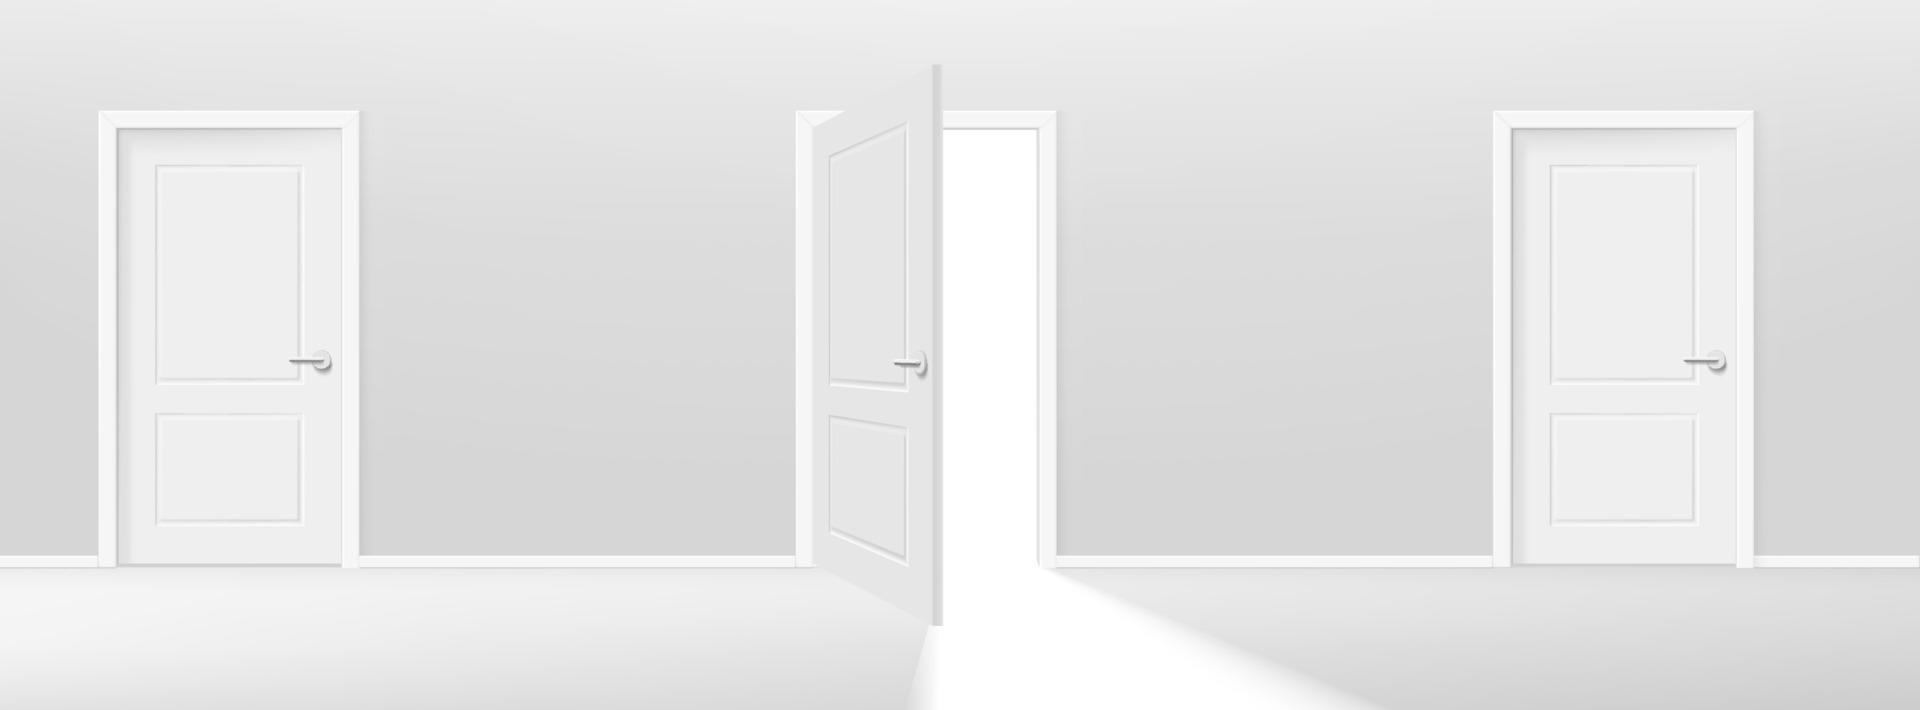 tres puertas una de ellas se abre. ilustración vectorial de estilo 3d realista vector